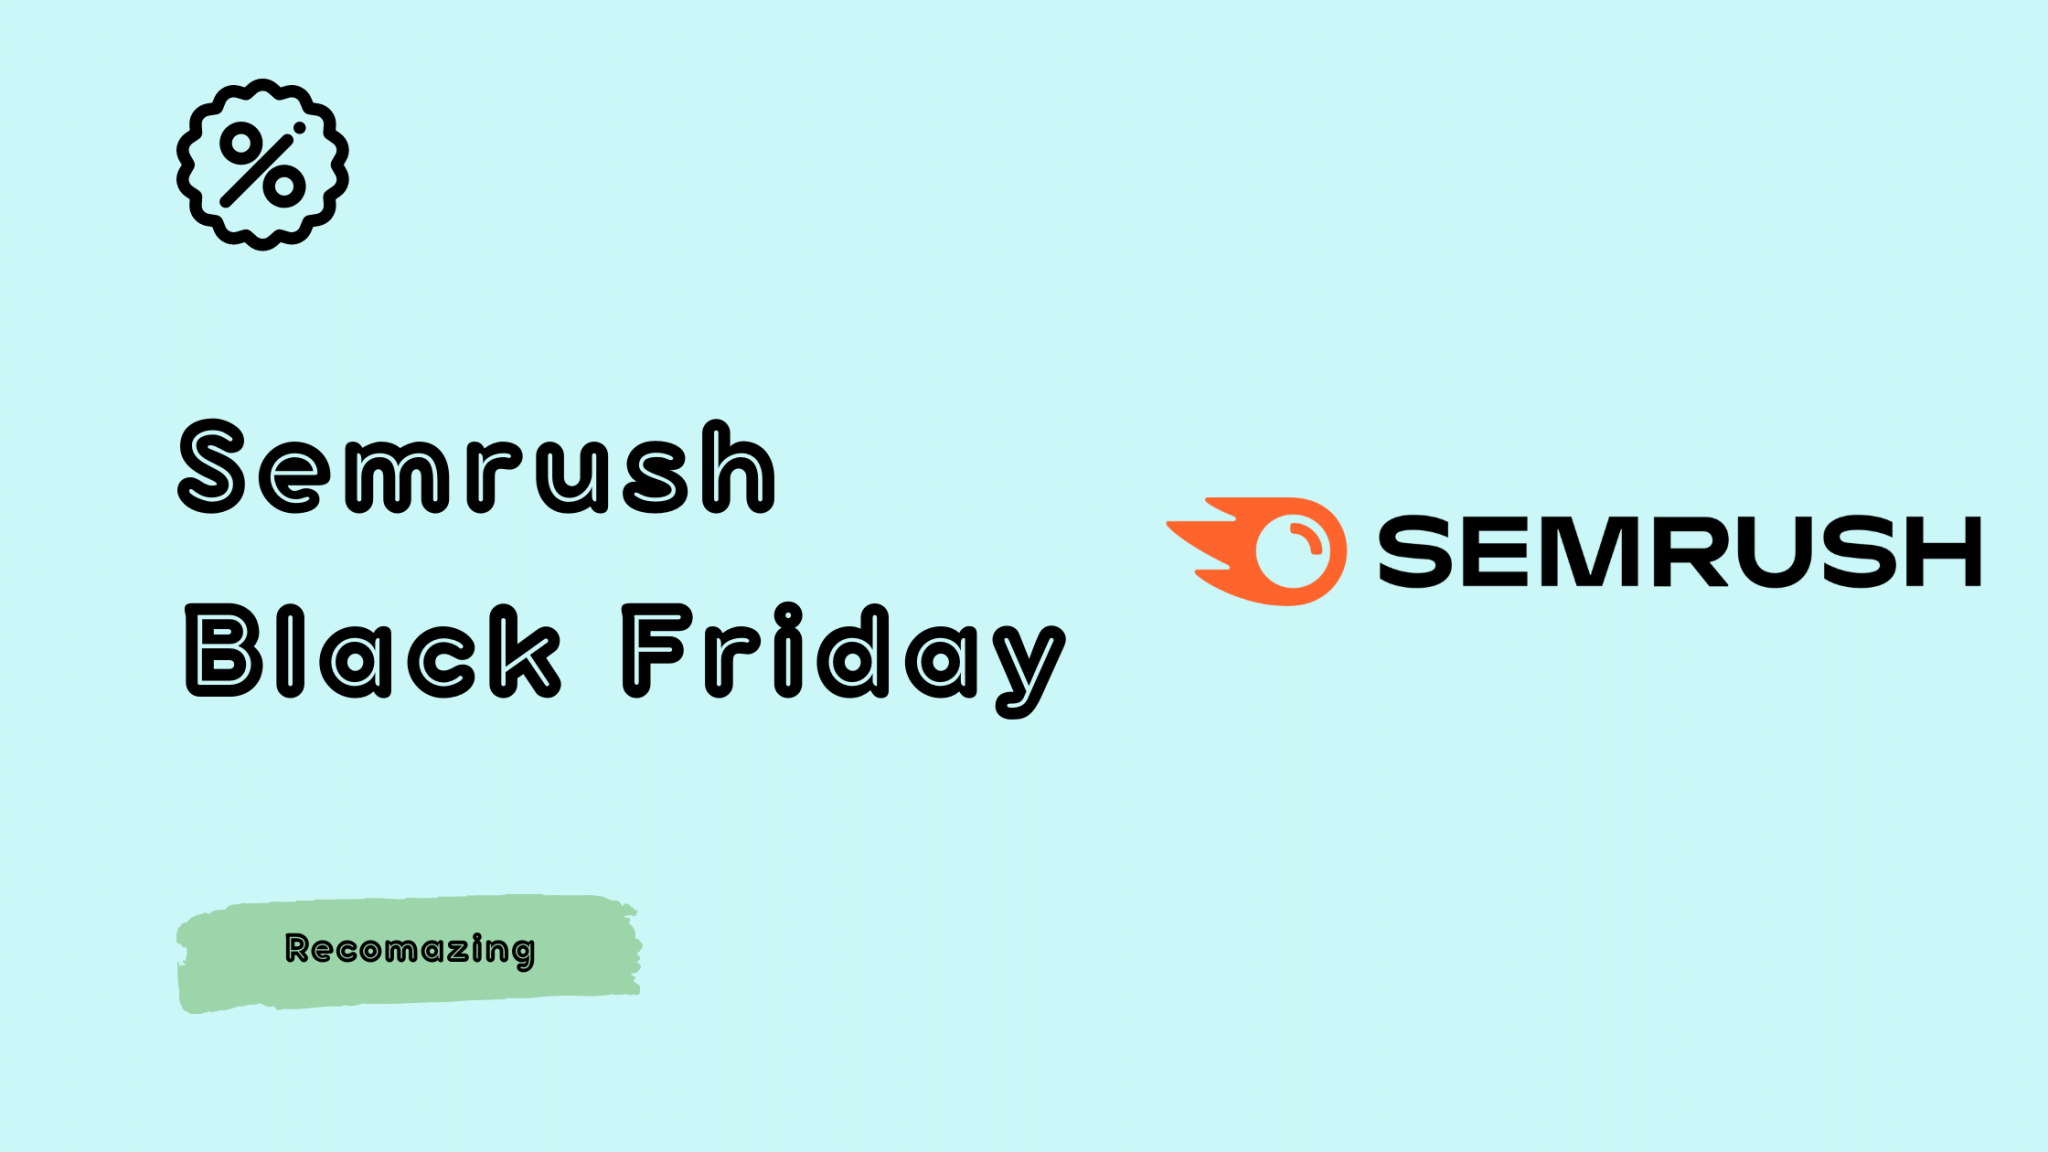 SEMrush Black Friday